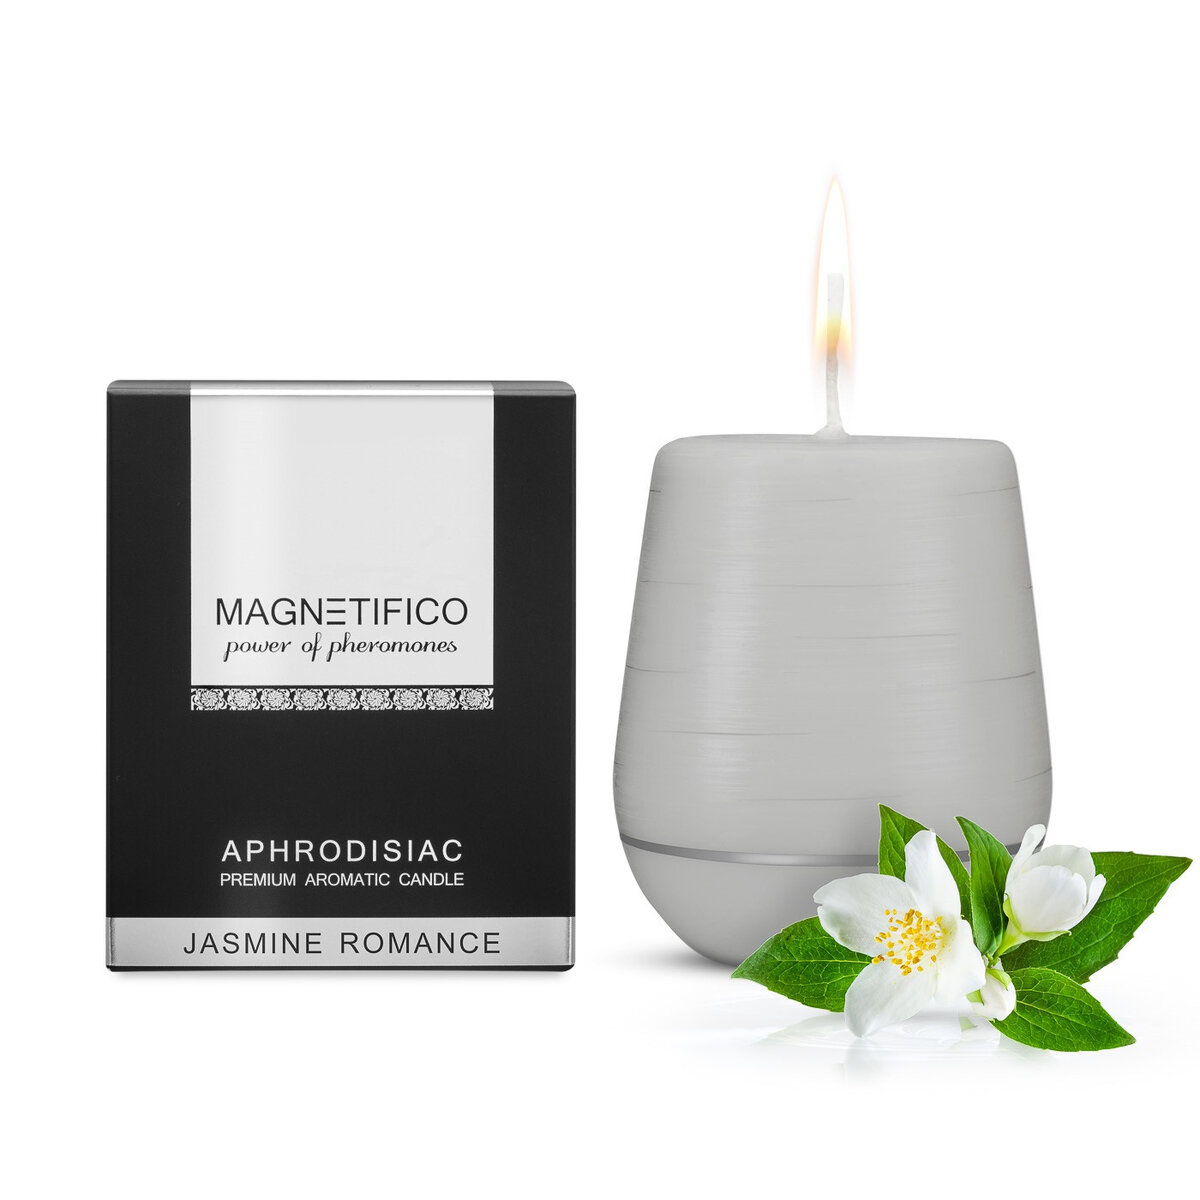 Afrodiziakální vonná svíčka Magnetifico Aphrodisiac Candle Jasmine Romance - Valavani, šedá UNI i10_P27326_1:120_2:114_